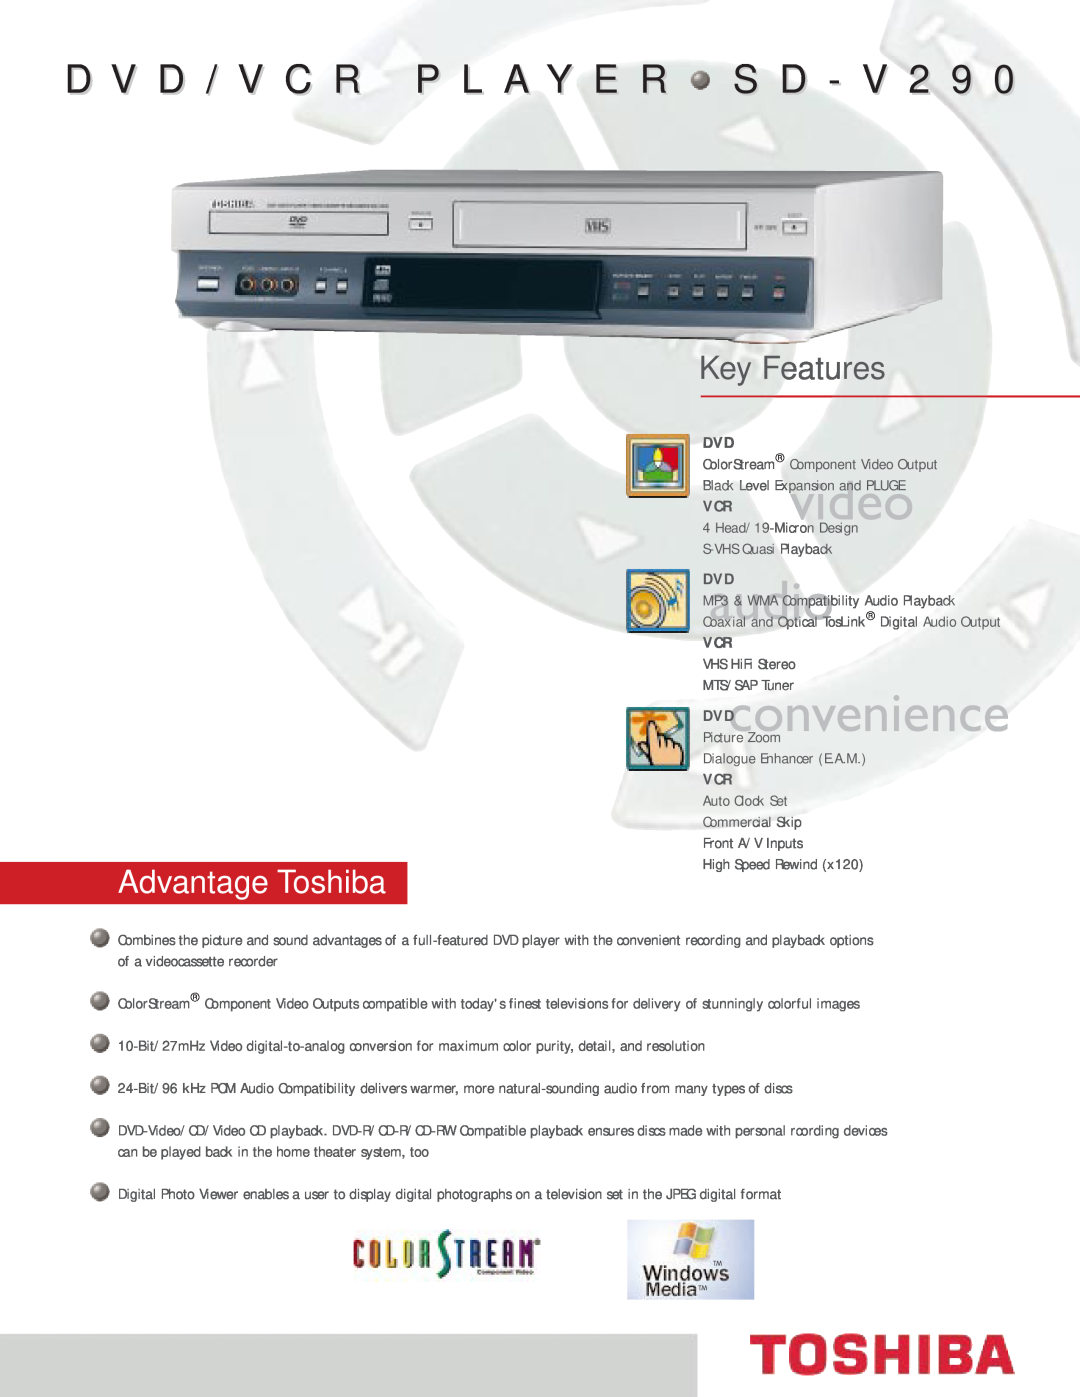 Toshiba SD-V290 manual Key Features, DVDaudio, DVDconvenience, D V D / V C R P L A Y E R S D - V 2 9, Advantage Toshiba 